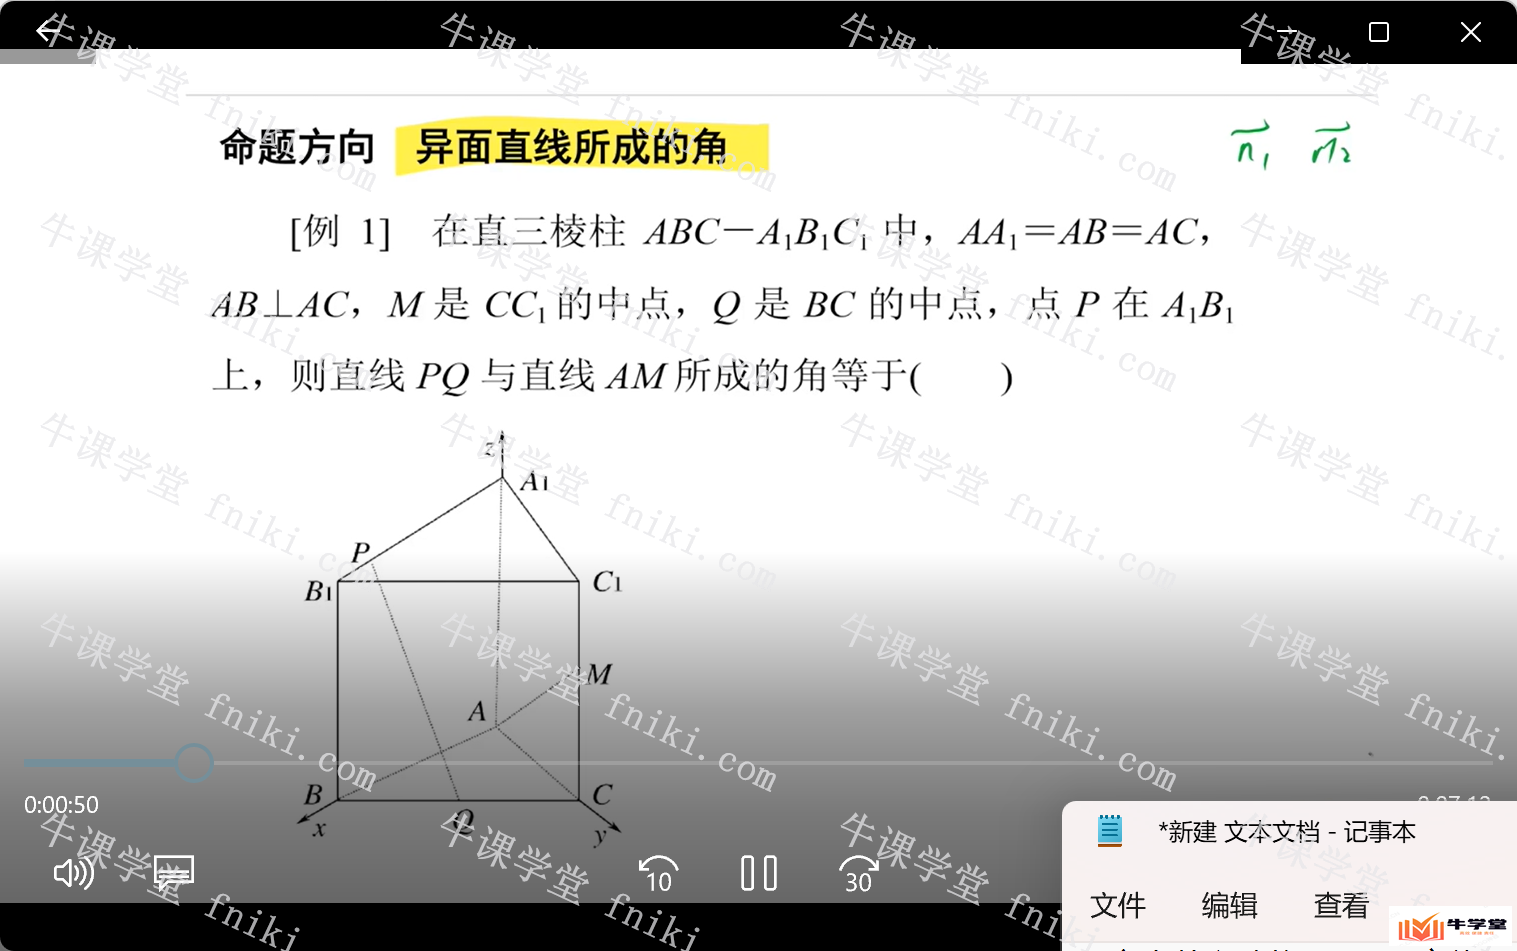 高中数学名师刘畅授课必修精选网课教程高考大题全套课程讲义